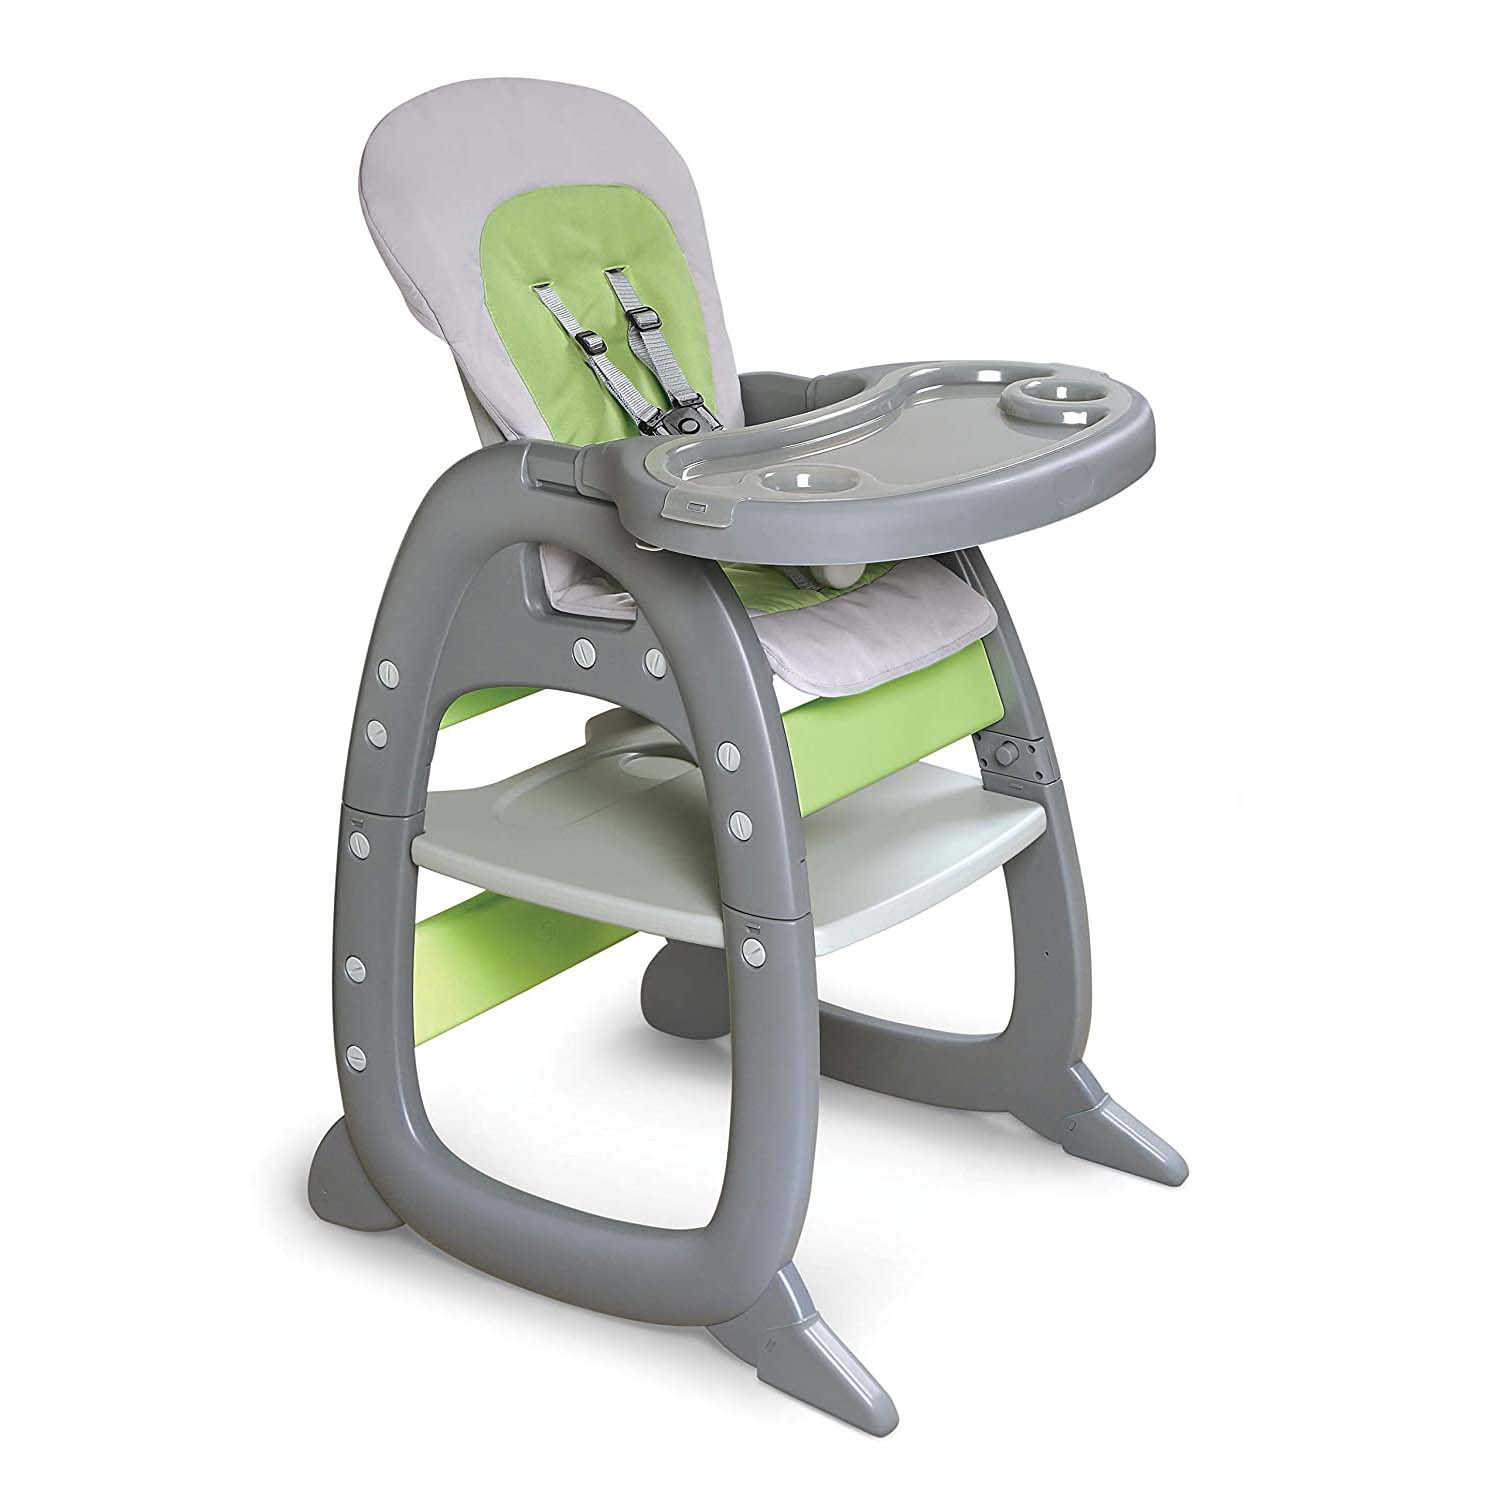 Детский стульчик-трансформер Badger Basket Envee II, серый/зеленый детский стульчик трансформер badger basket envee ii серый зеленый